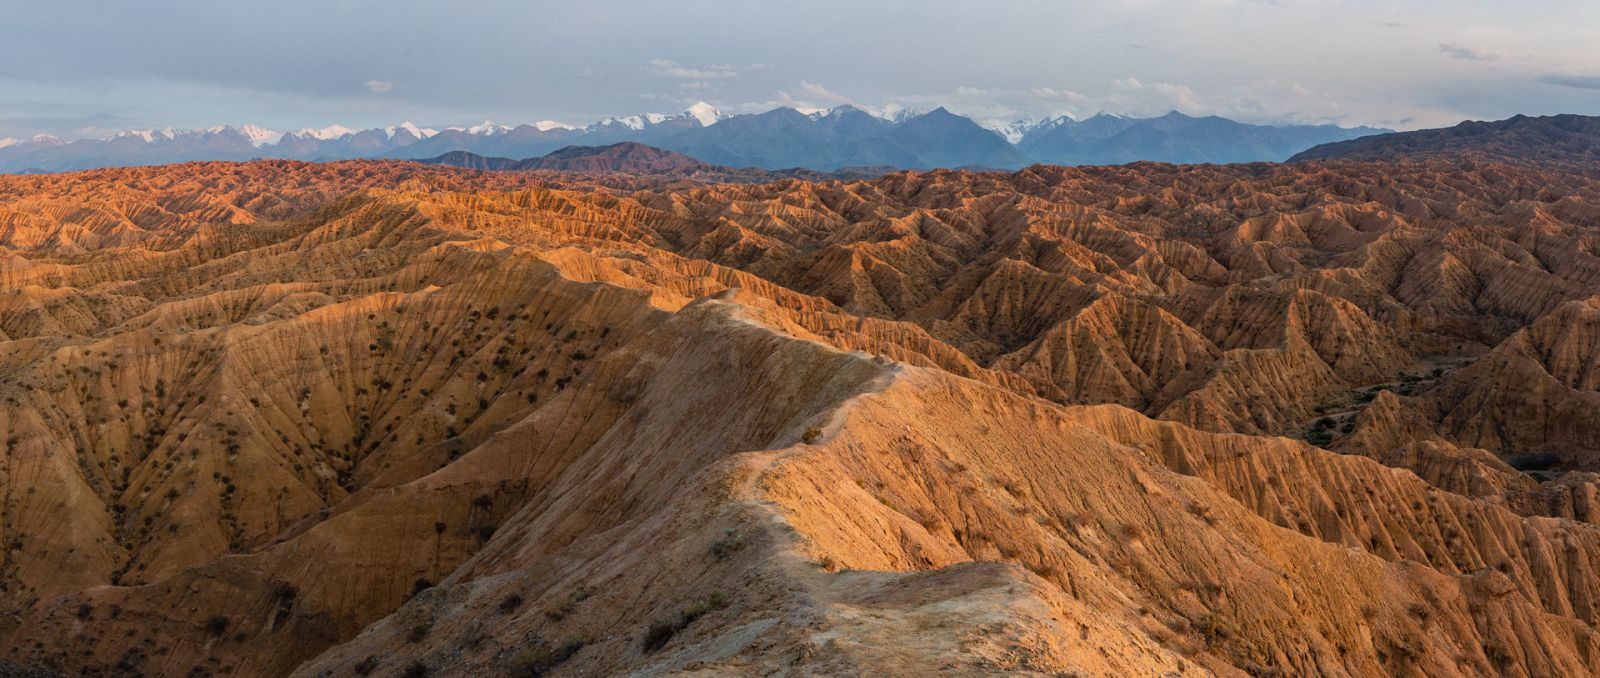 Kaňony zapomenutých řek, jedno z nejpoutavějších míst celého Kyrgyzstánu. Se zvrásněnou pouštní krajinou ostře kontrastují zaledněné vrcholy Těrského Alatau.